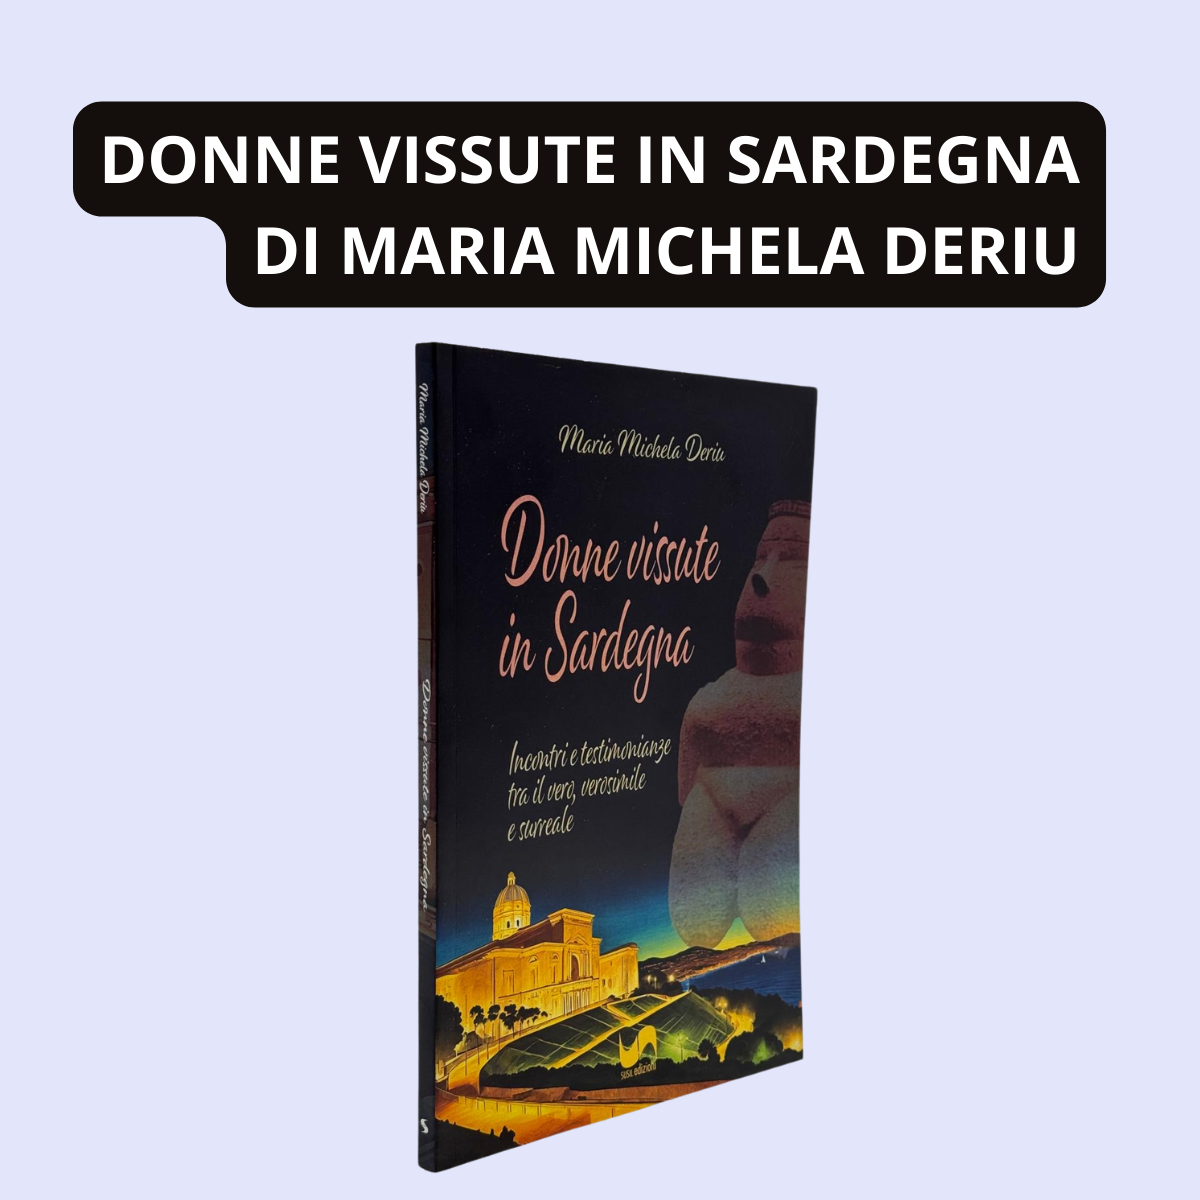 DONNE VISSUTE IN SARDEGNA di Maria Michela Deriu